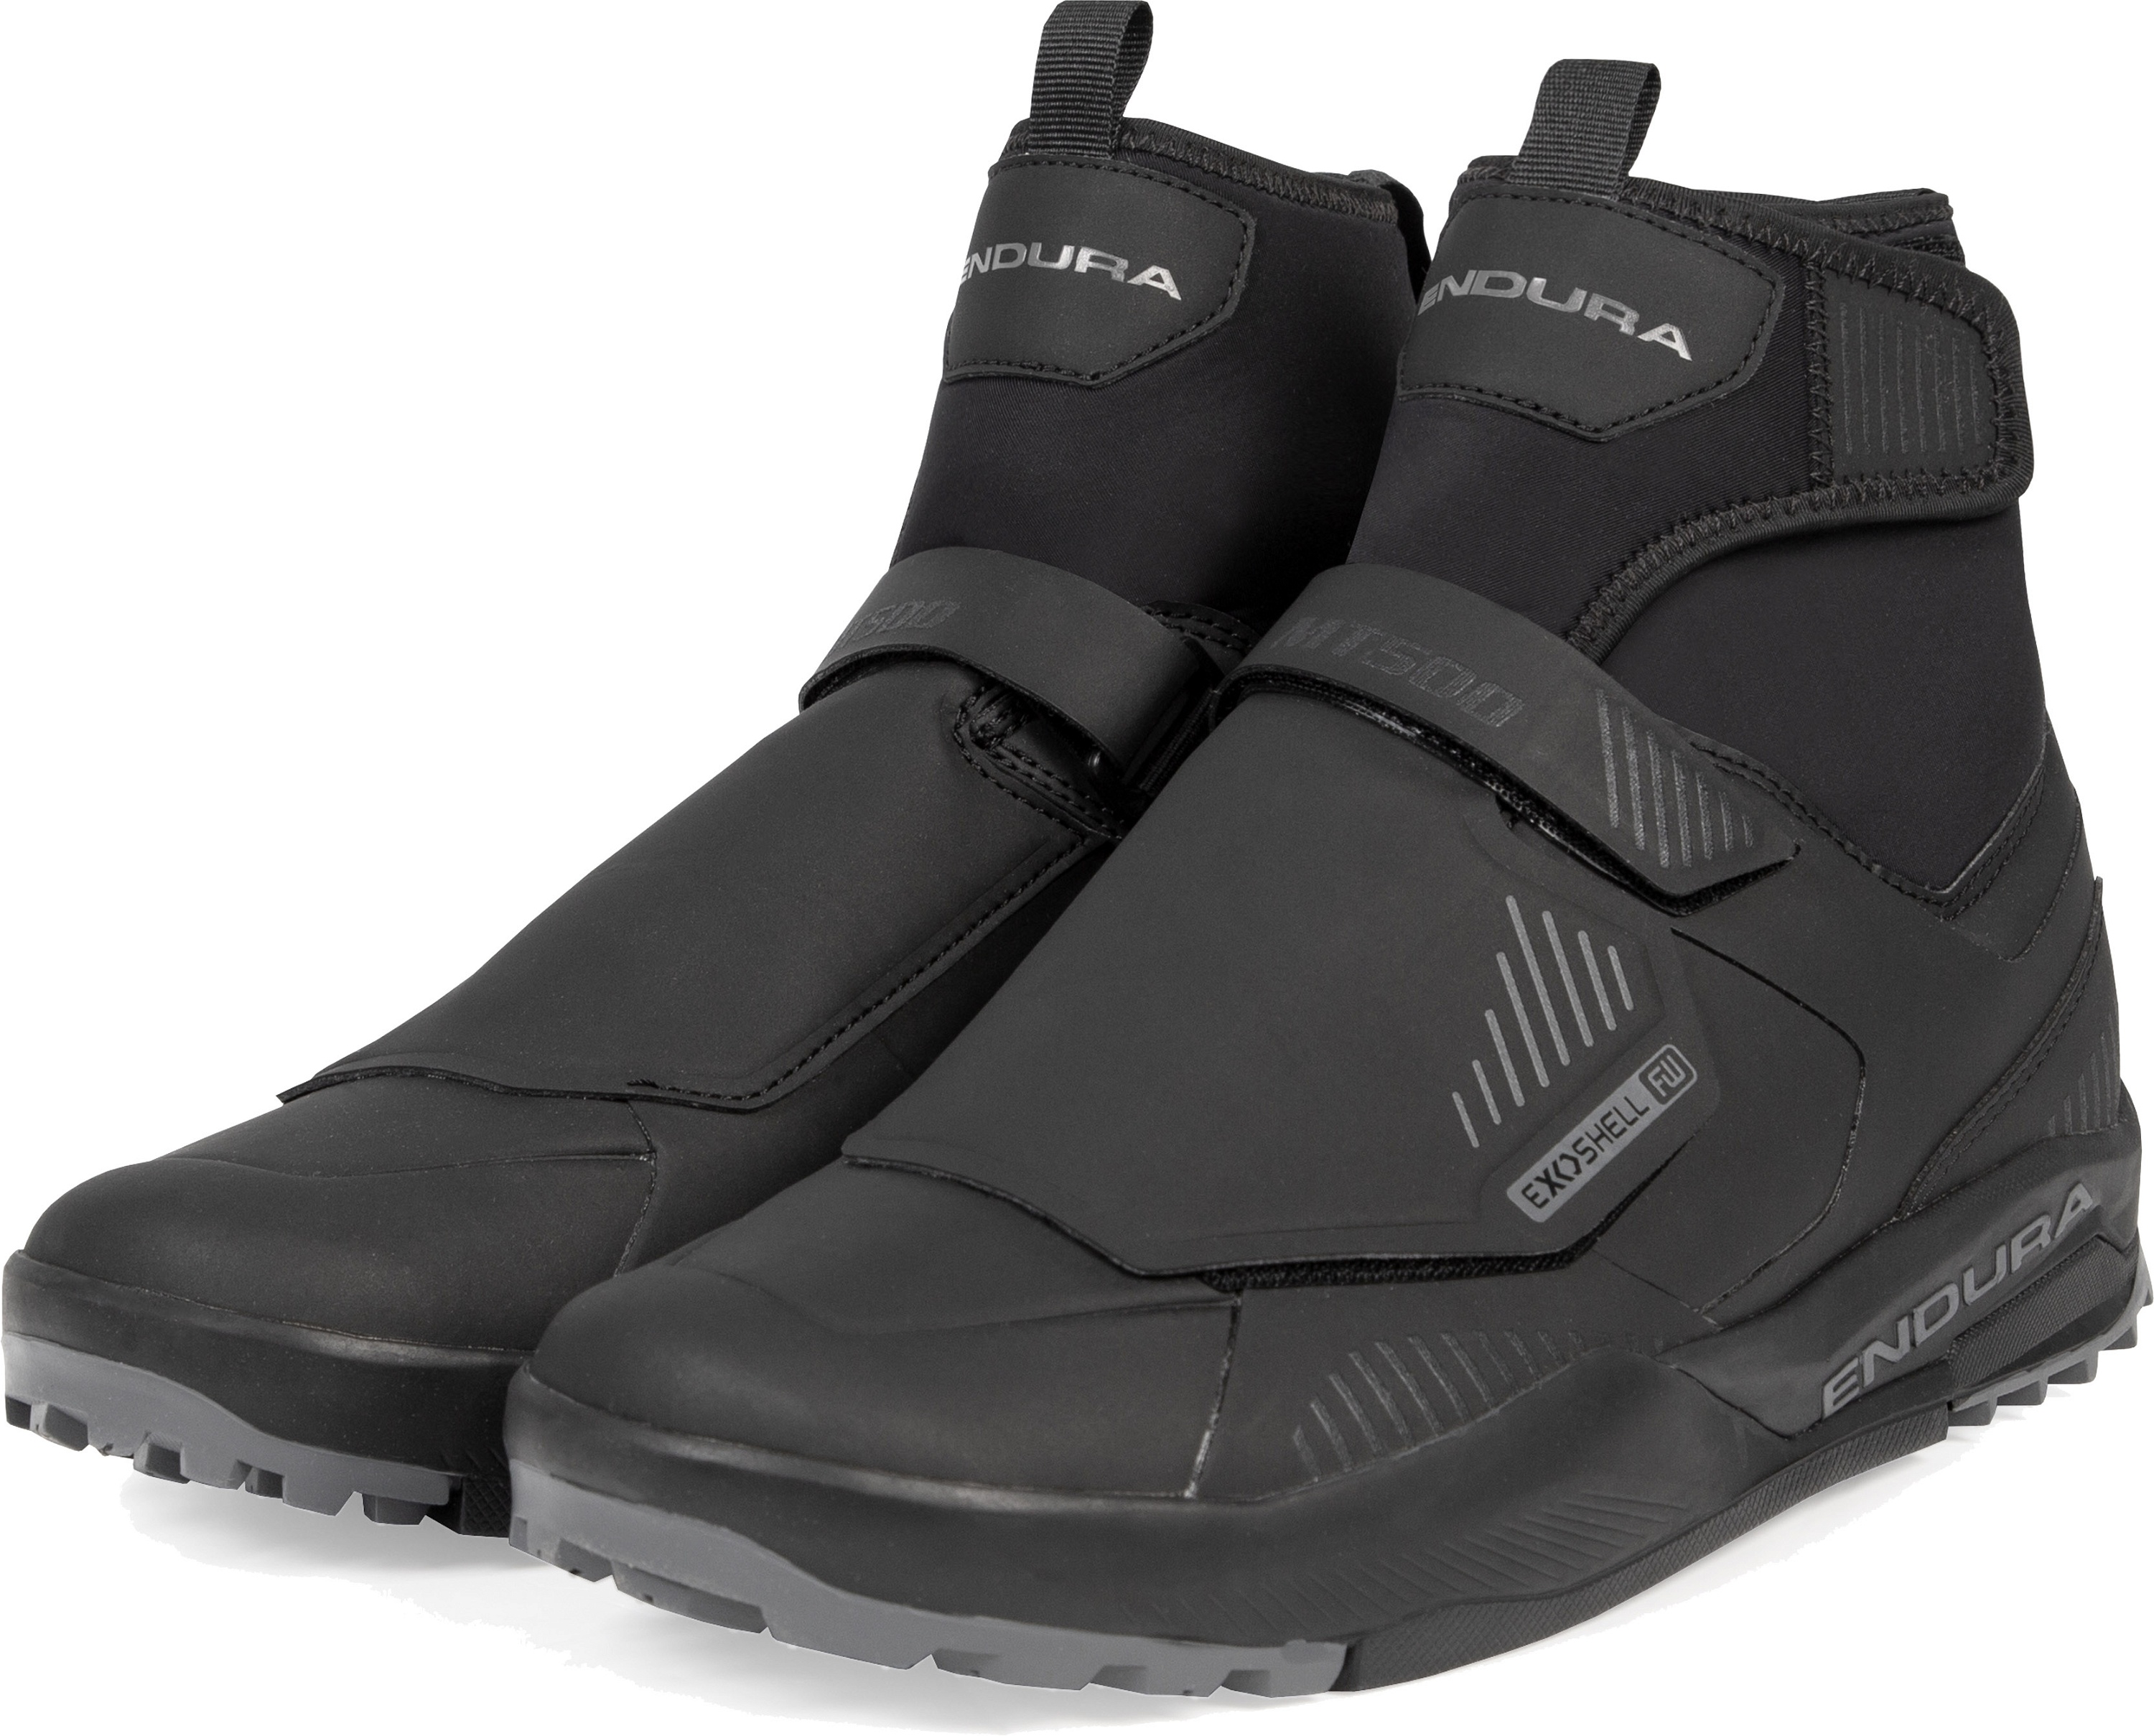 Beklædning - Cykelsko - Endura MT500 Burner Flat Waterproof Shoe - Black